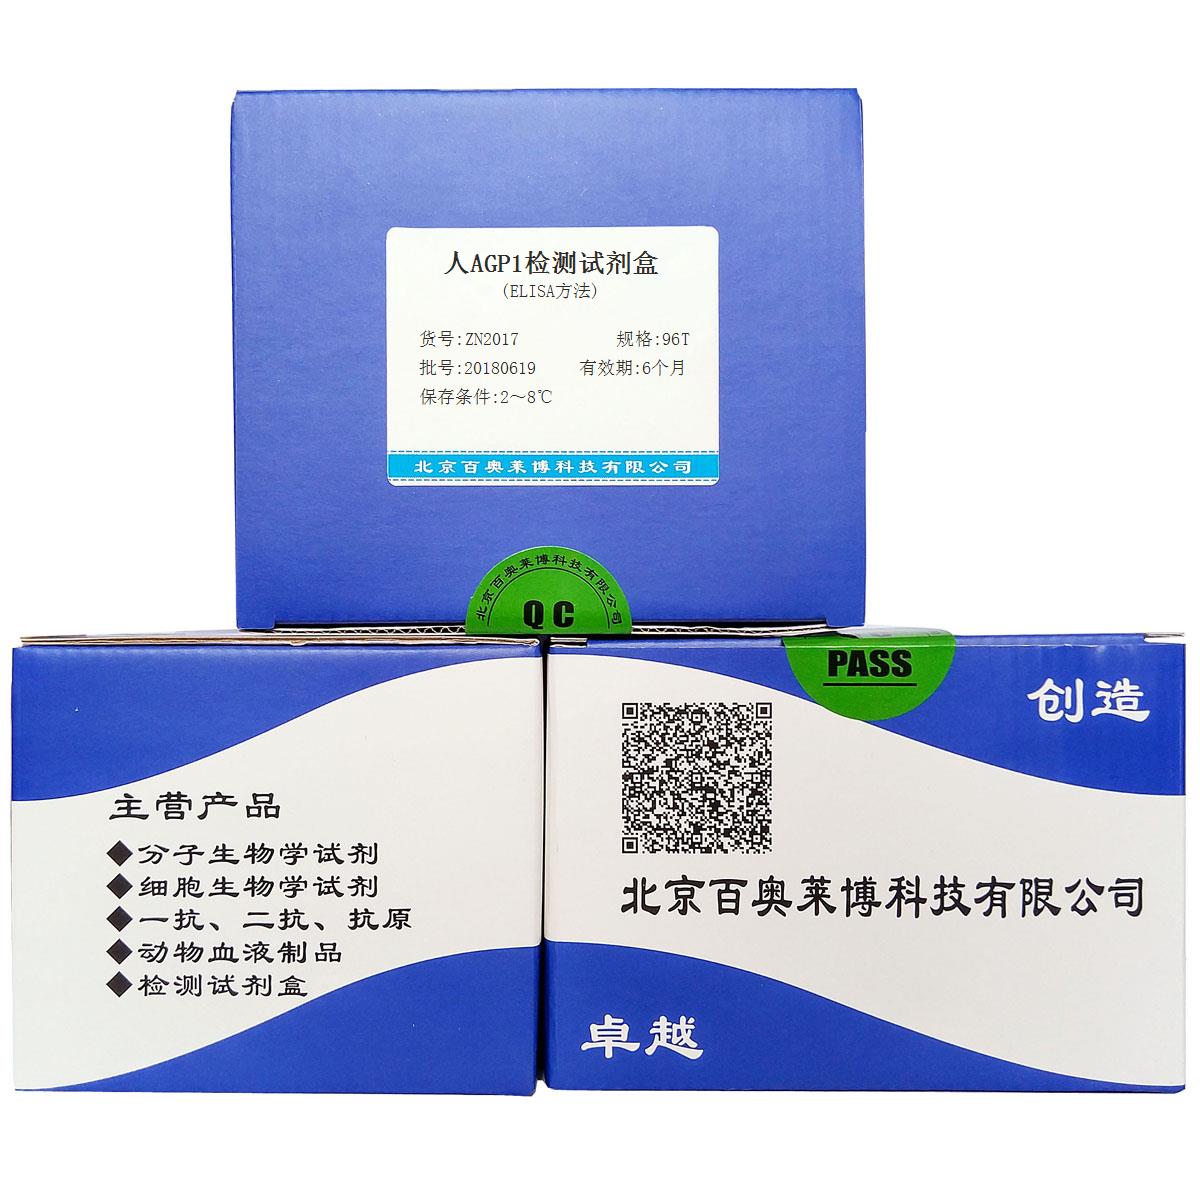 北京现货人AGP1检测试剂盒(ELISA方法)销售